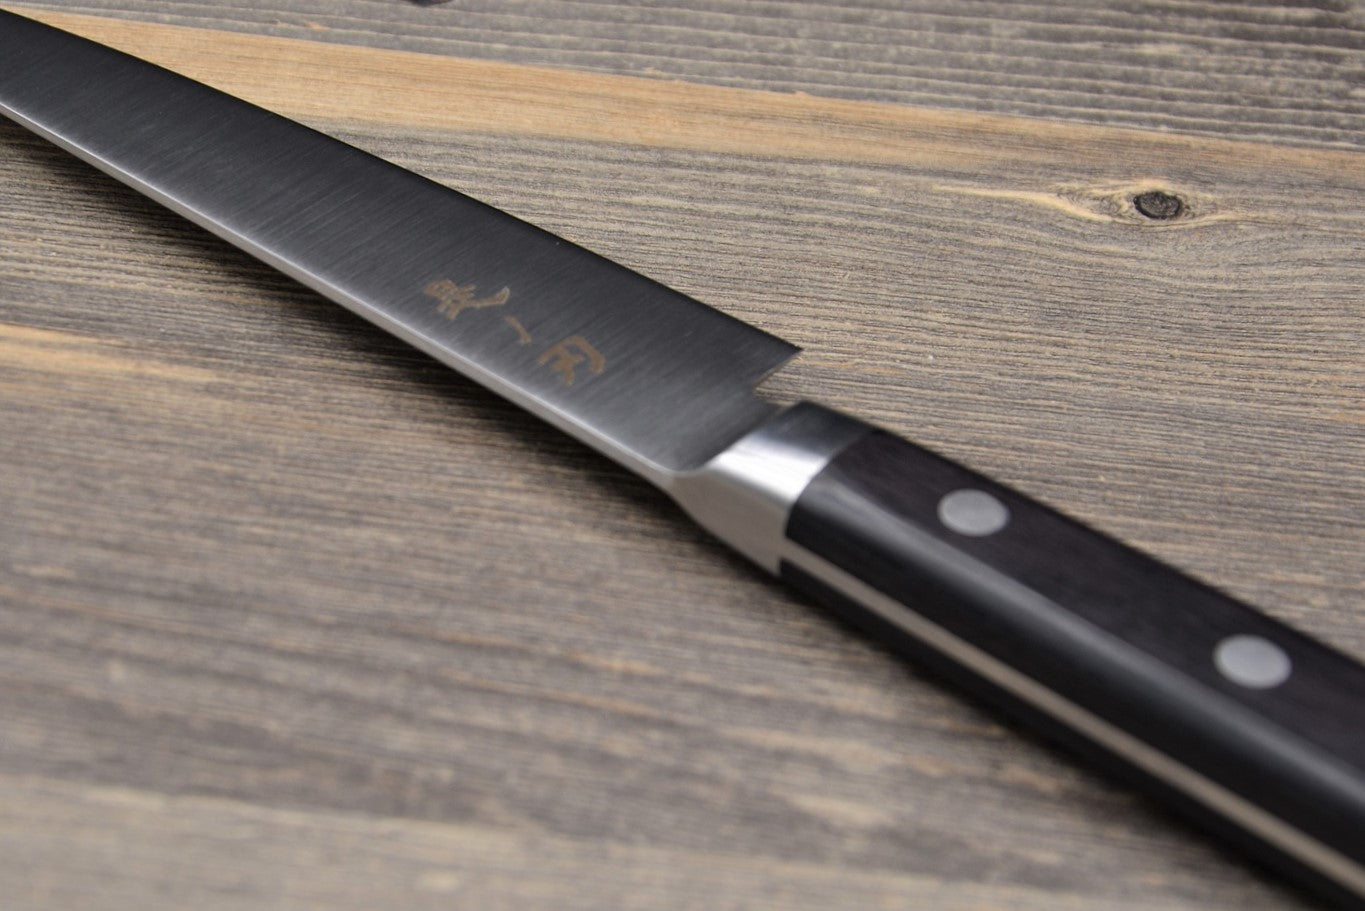 Konoha basic petty knife 120mm